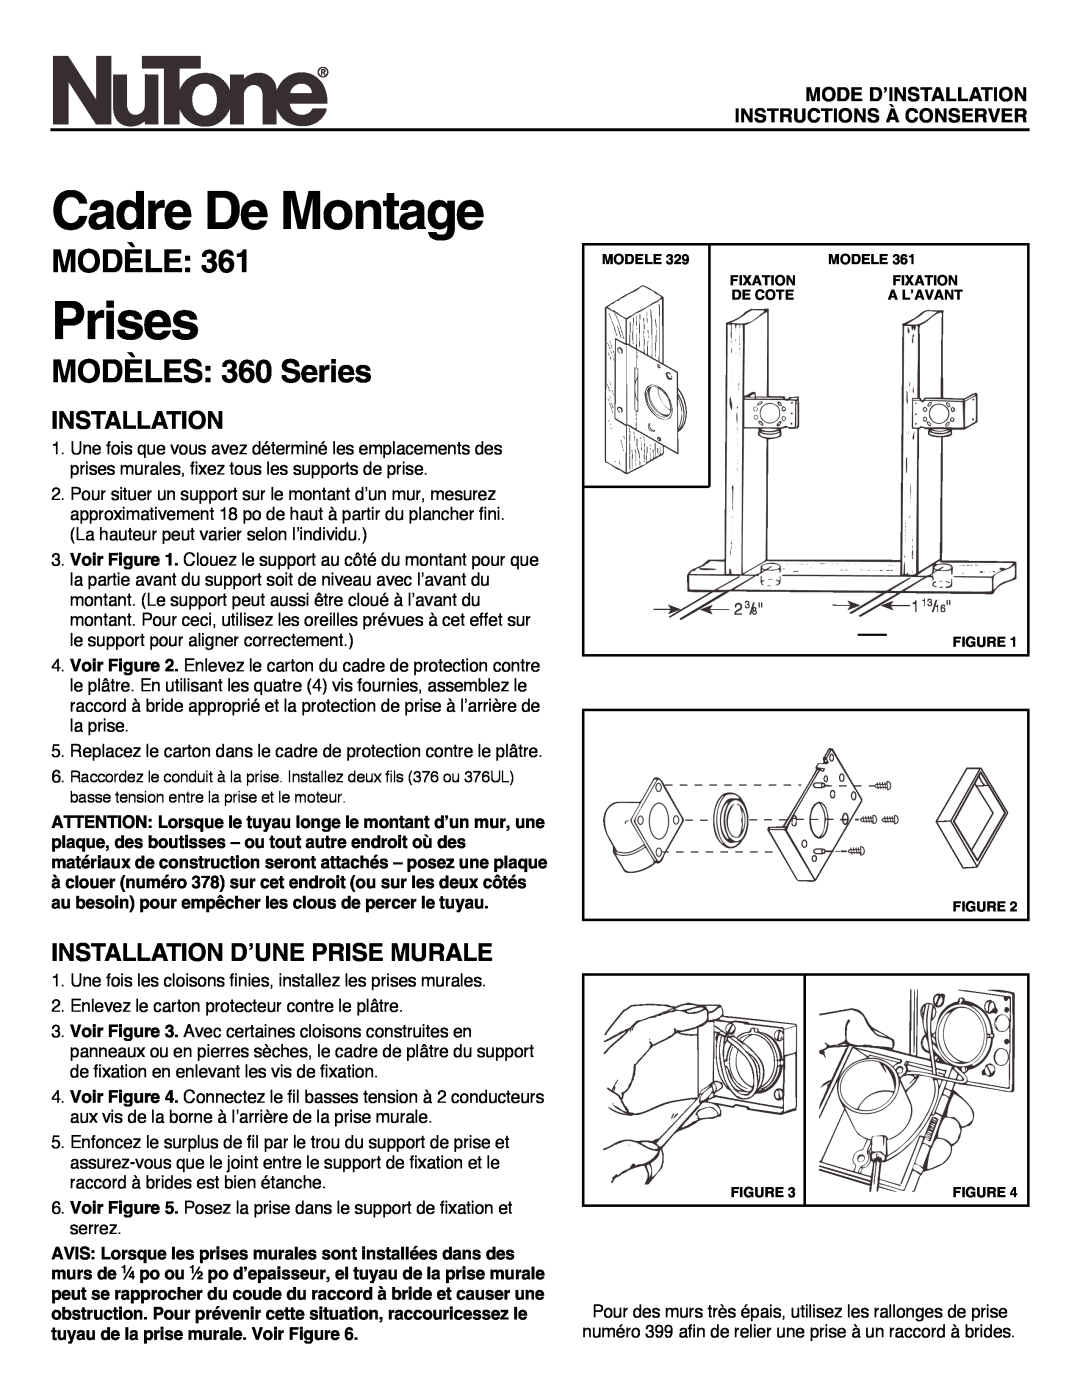 NuTone 361 Cadre De Montage, Prises, Modèle, MODÈLES 360 Series, Installation D’Une Prise Murale, 1 13 